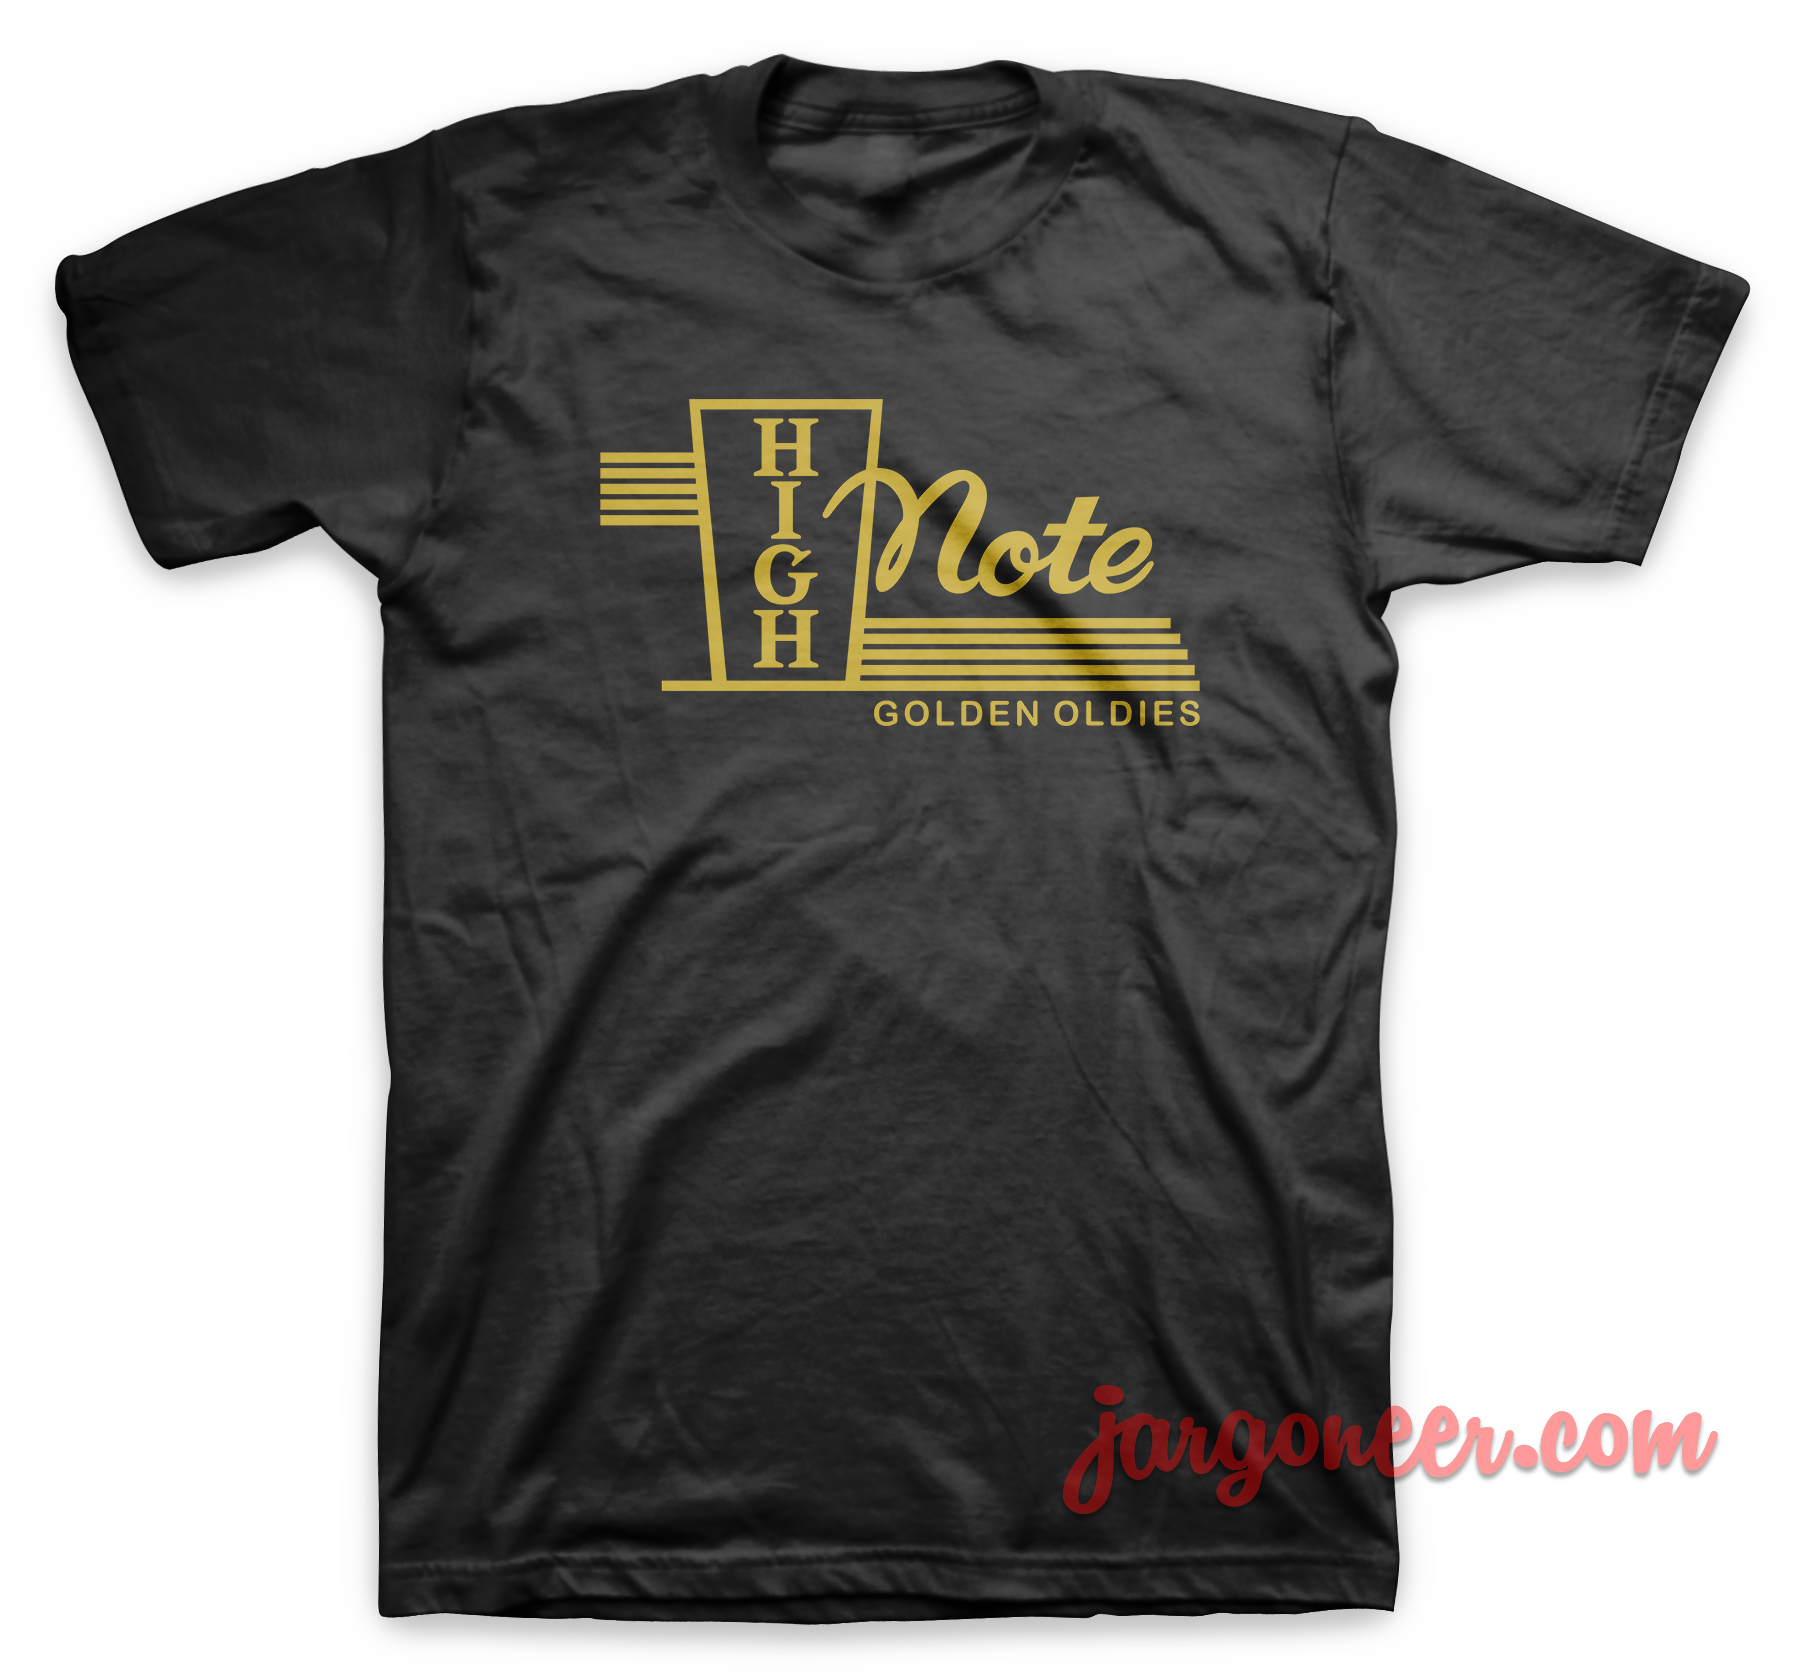 Highnote Golden Oldies Black T Shirt - Shop Unique Graphic Cool Shirt Designs